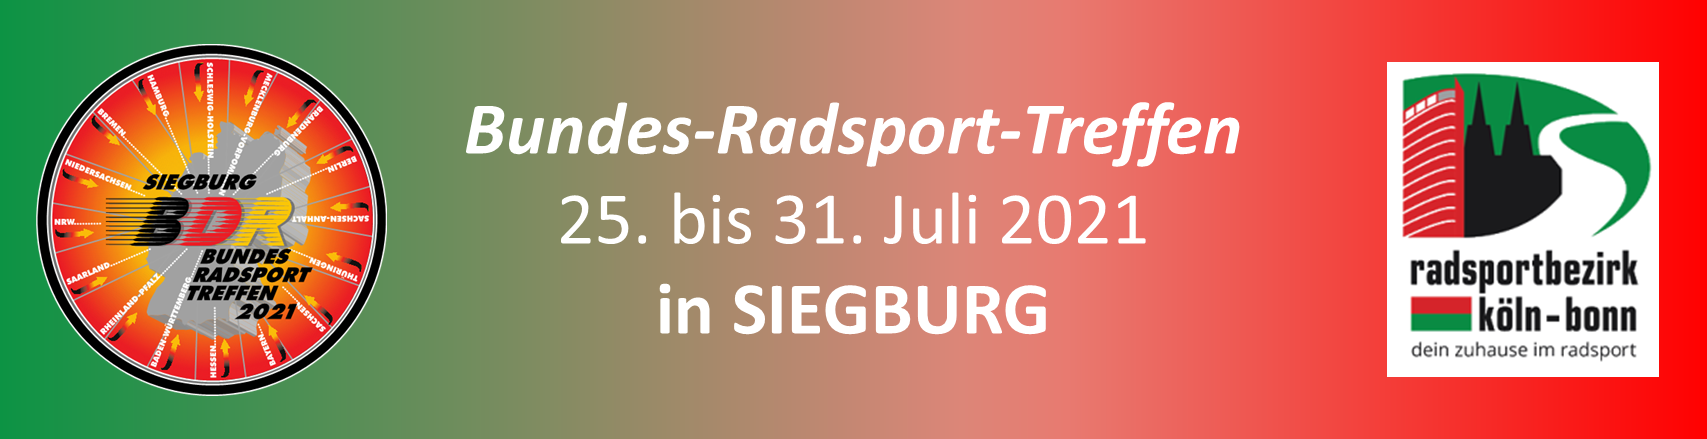 Bundes-Radsport-Treffen 2021